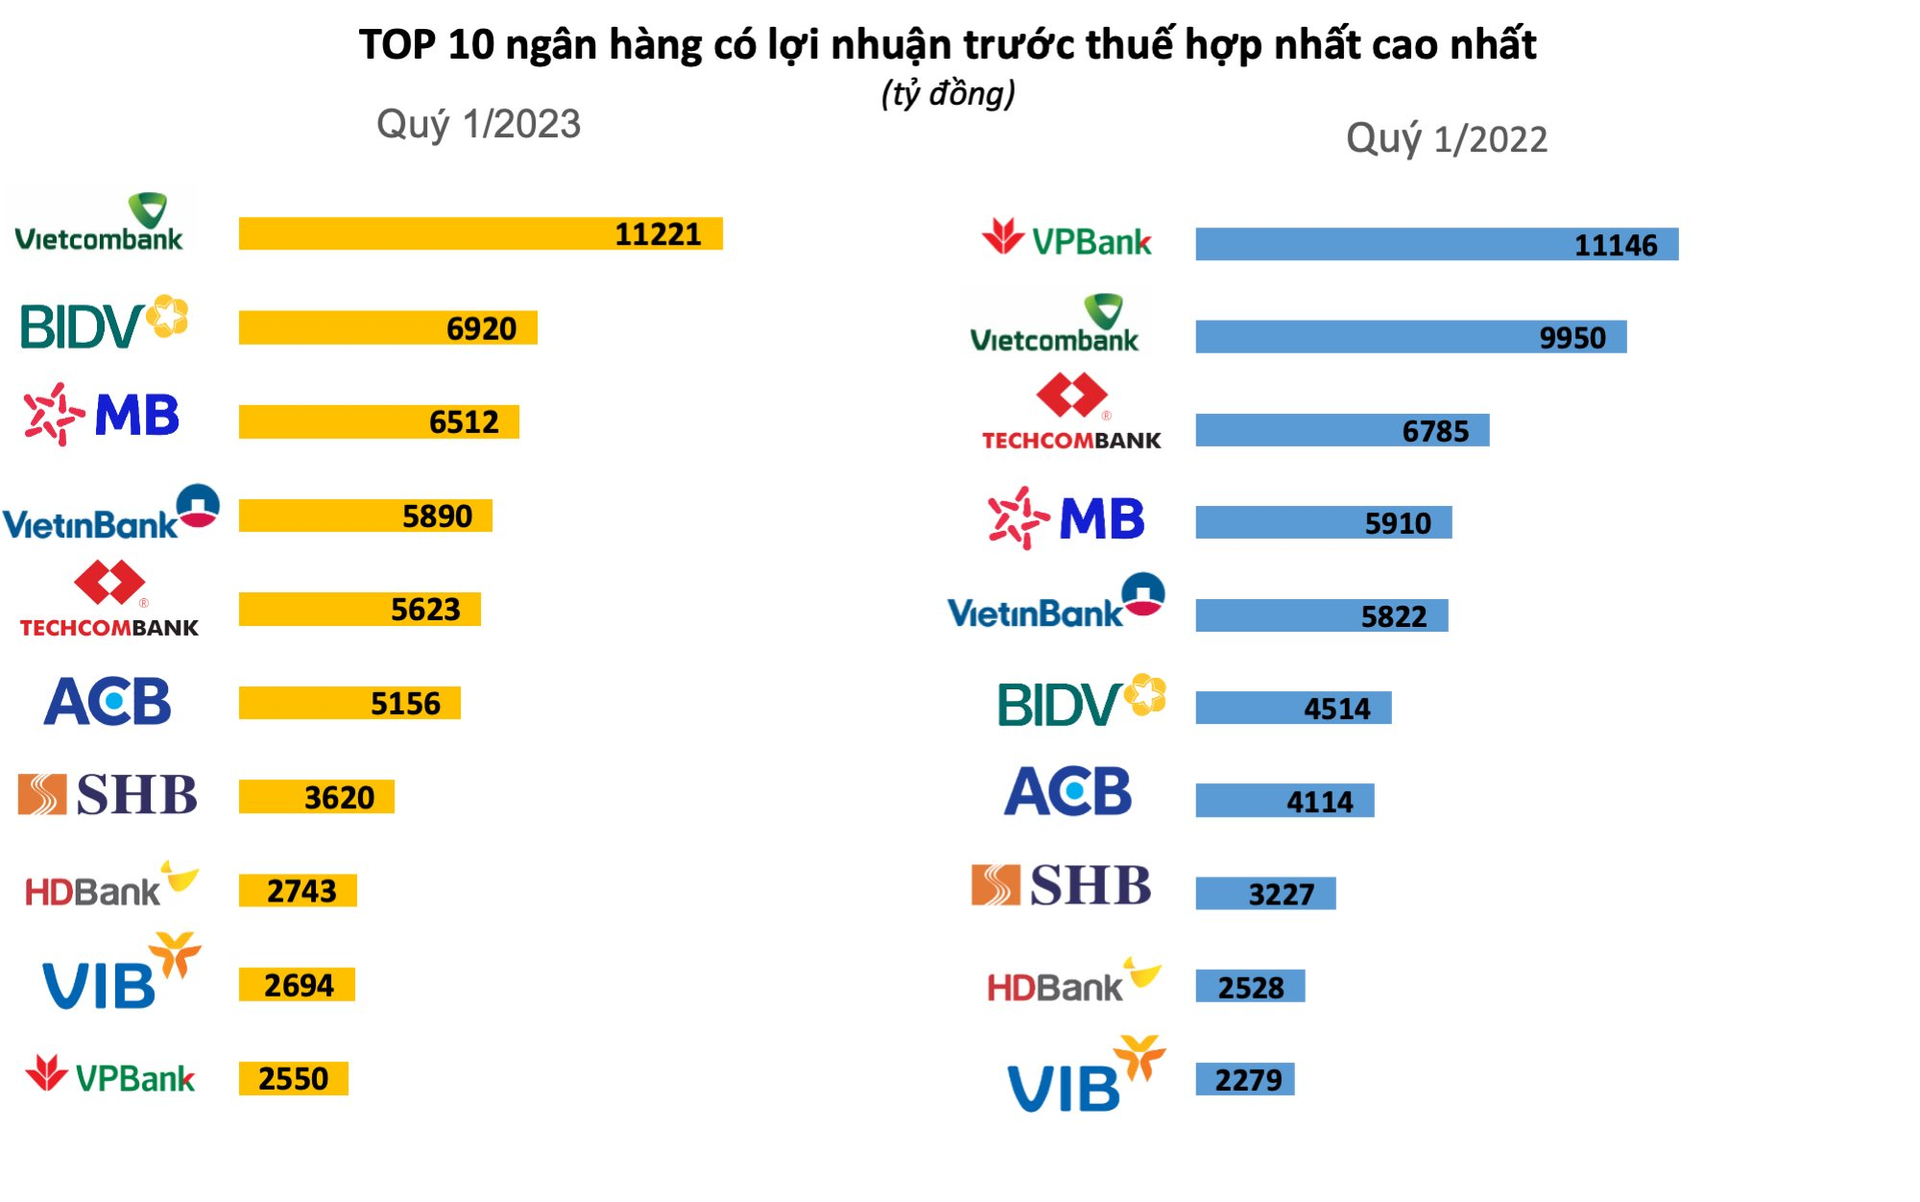 Lộ diện TOP 10 lợi nhuận ngân hàng quý 1/2023: Bất ngờ với vị trí “á quân”, không phải MB, cũng không phải Techcombank - Ảnh 1.